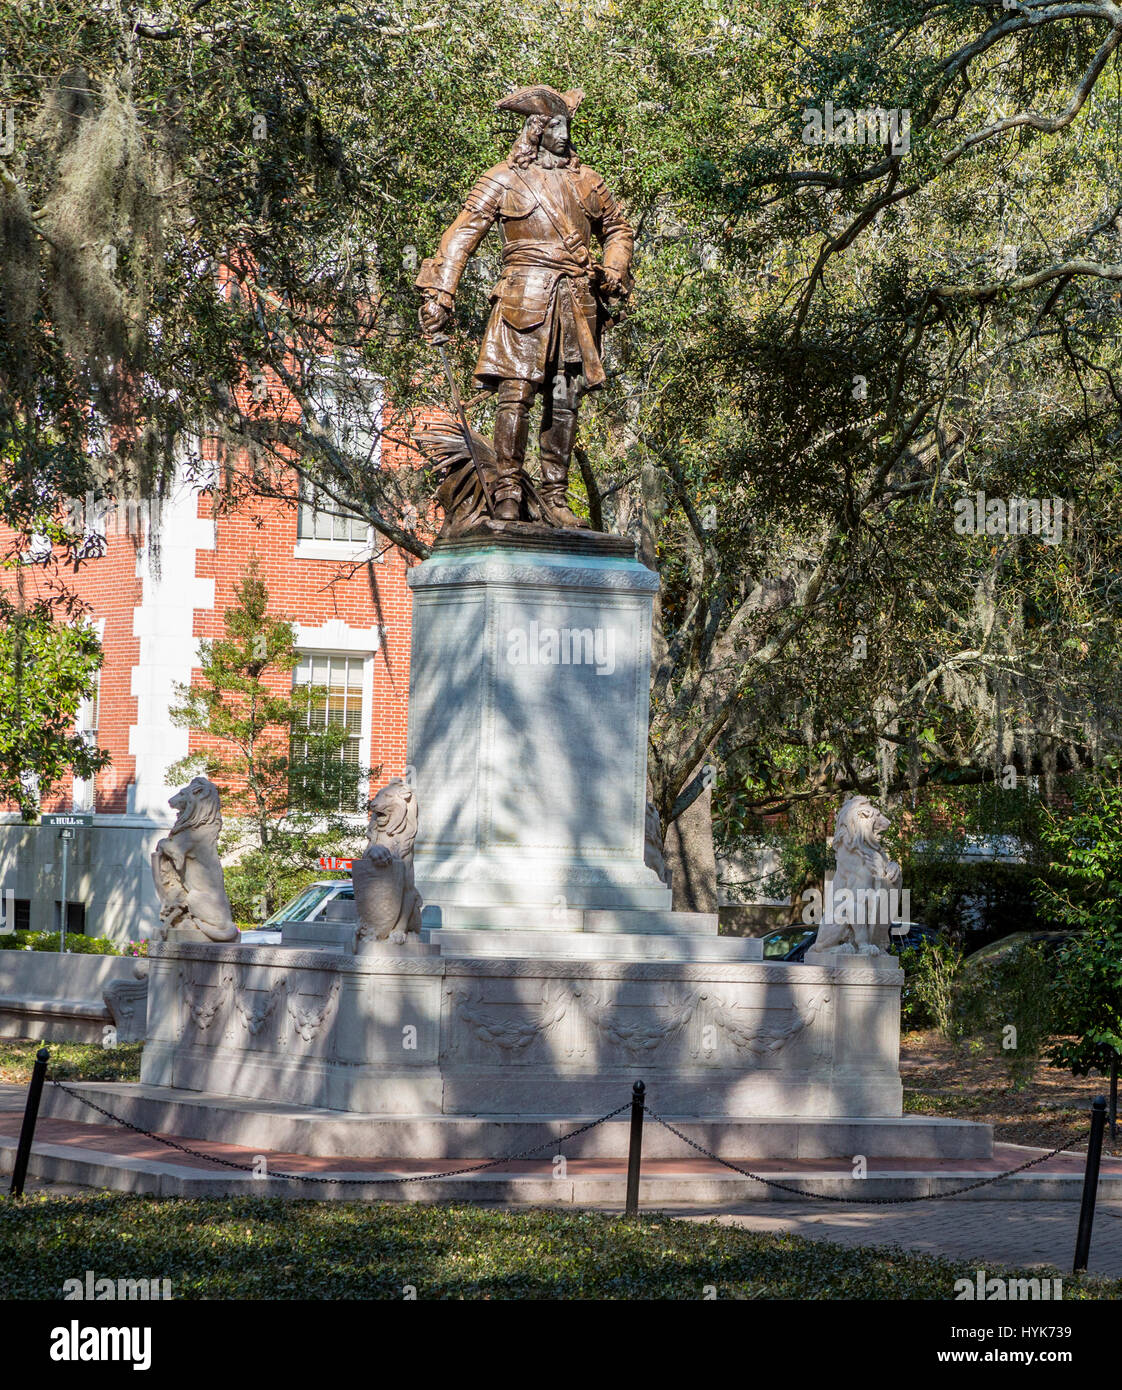 Savannah, Georgia.  James Oglethorpe Statue, von Daniel Chester French, Chippewa Square. Stockfoto